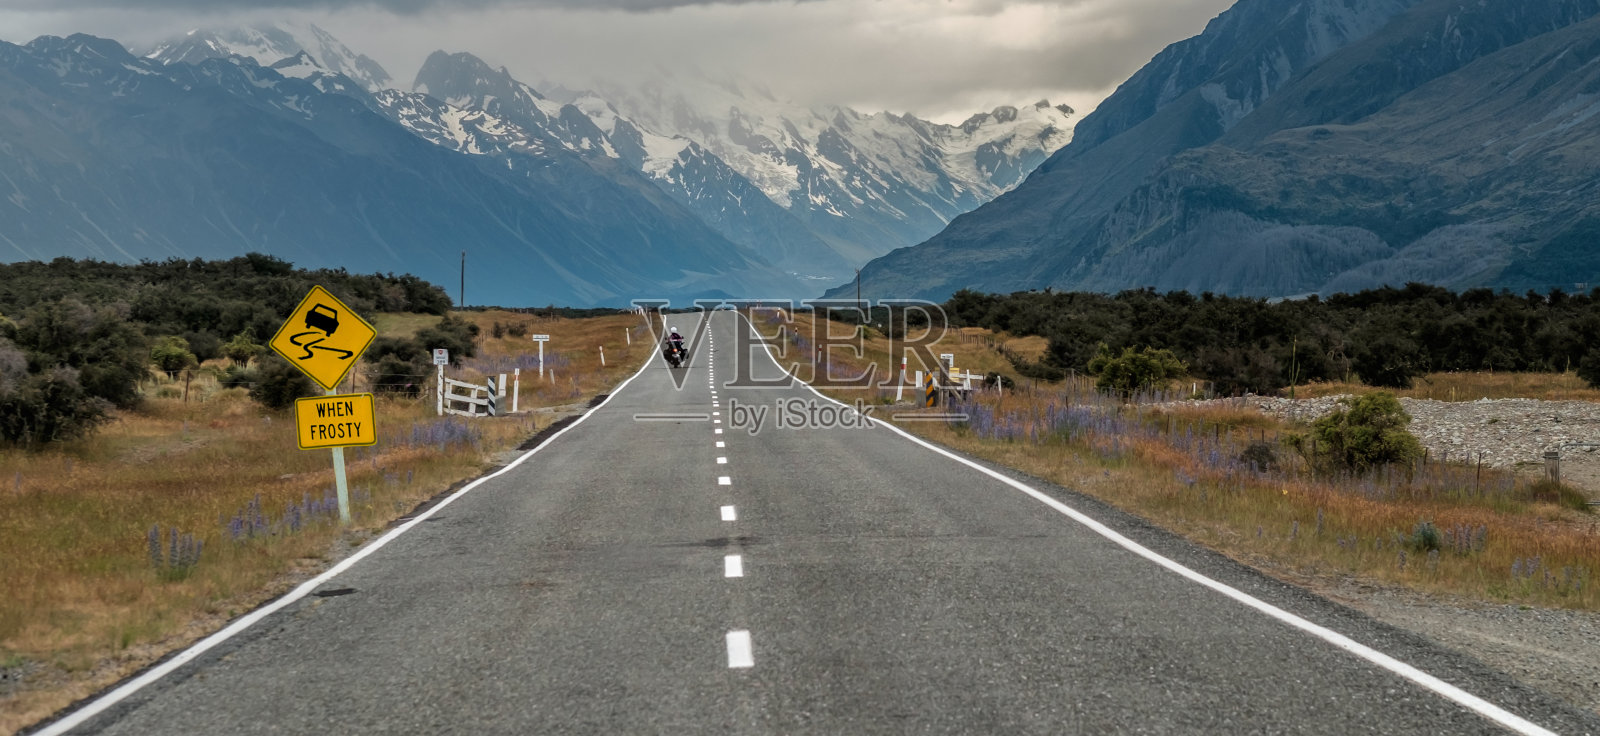 新西兰库克山(奥拉基)附近的道路上有摩托车手和路标“霜冻时滑”在新西兰南岛照片摄影图片